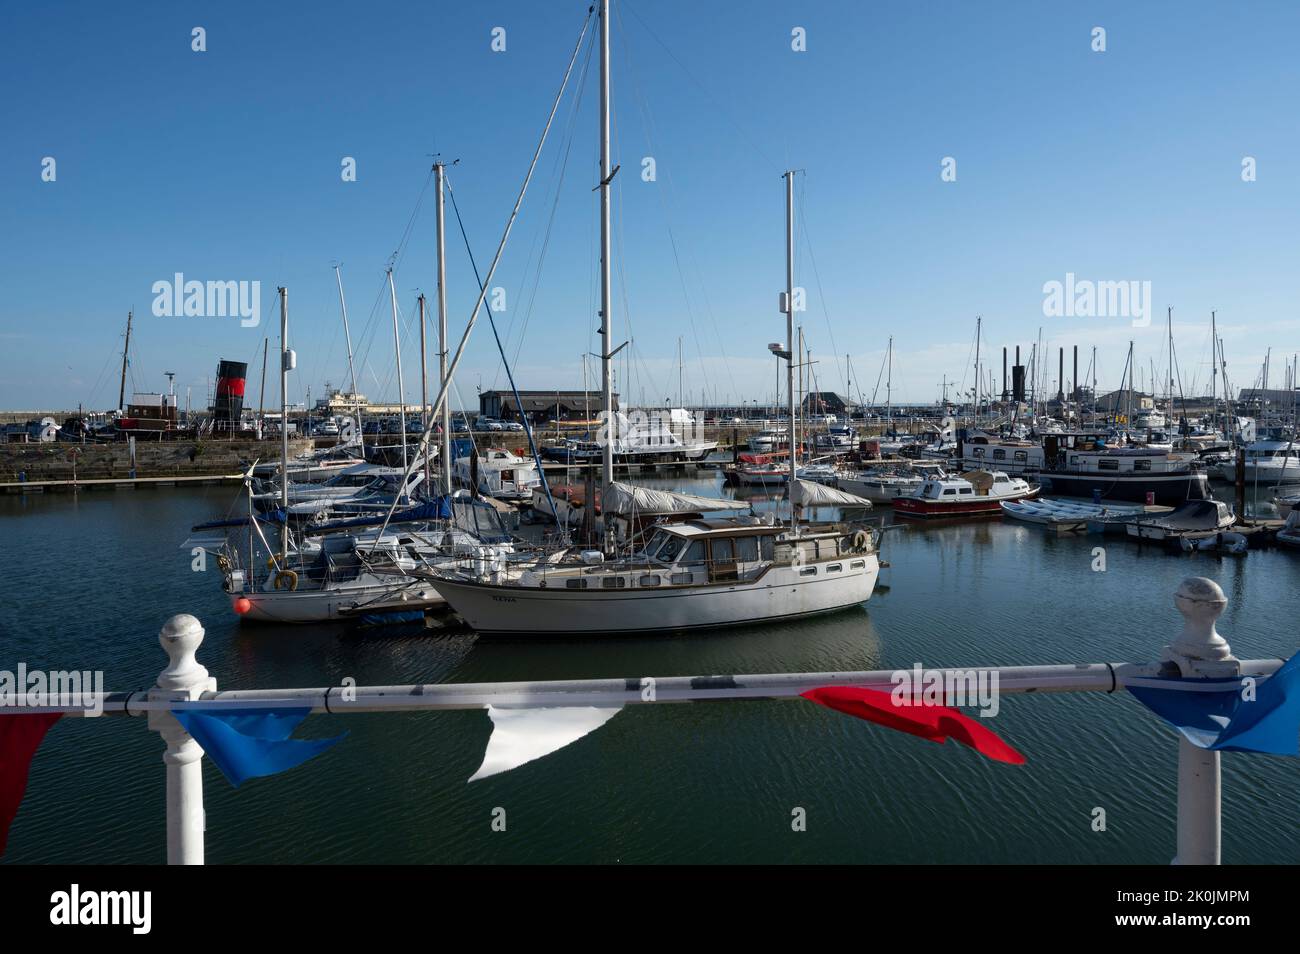 Ramsgate, Kent. Marina with yachts at anchor. Stock Photo